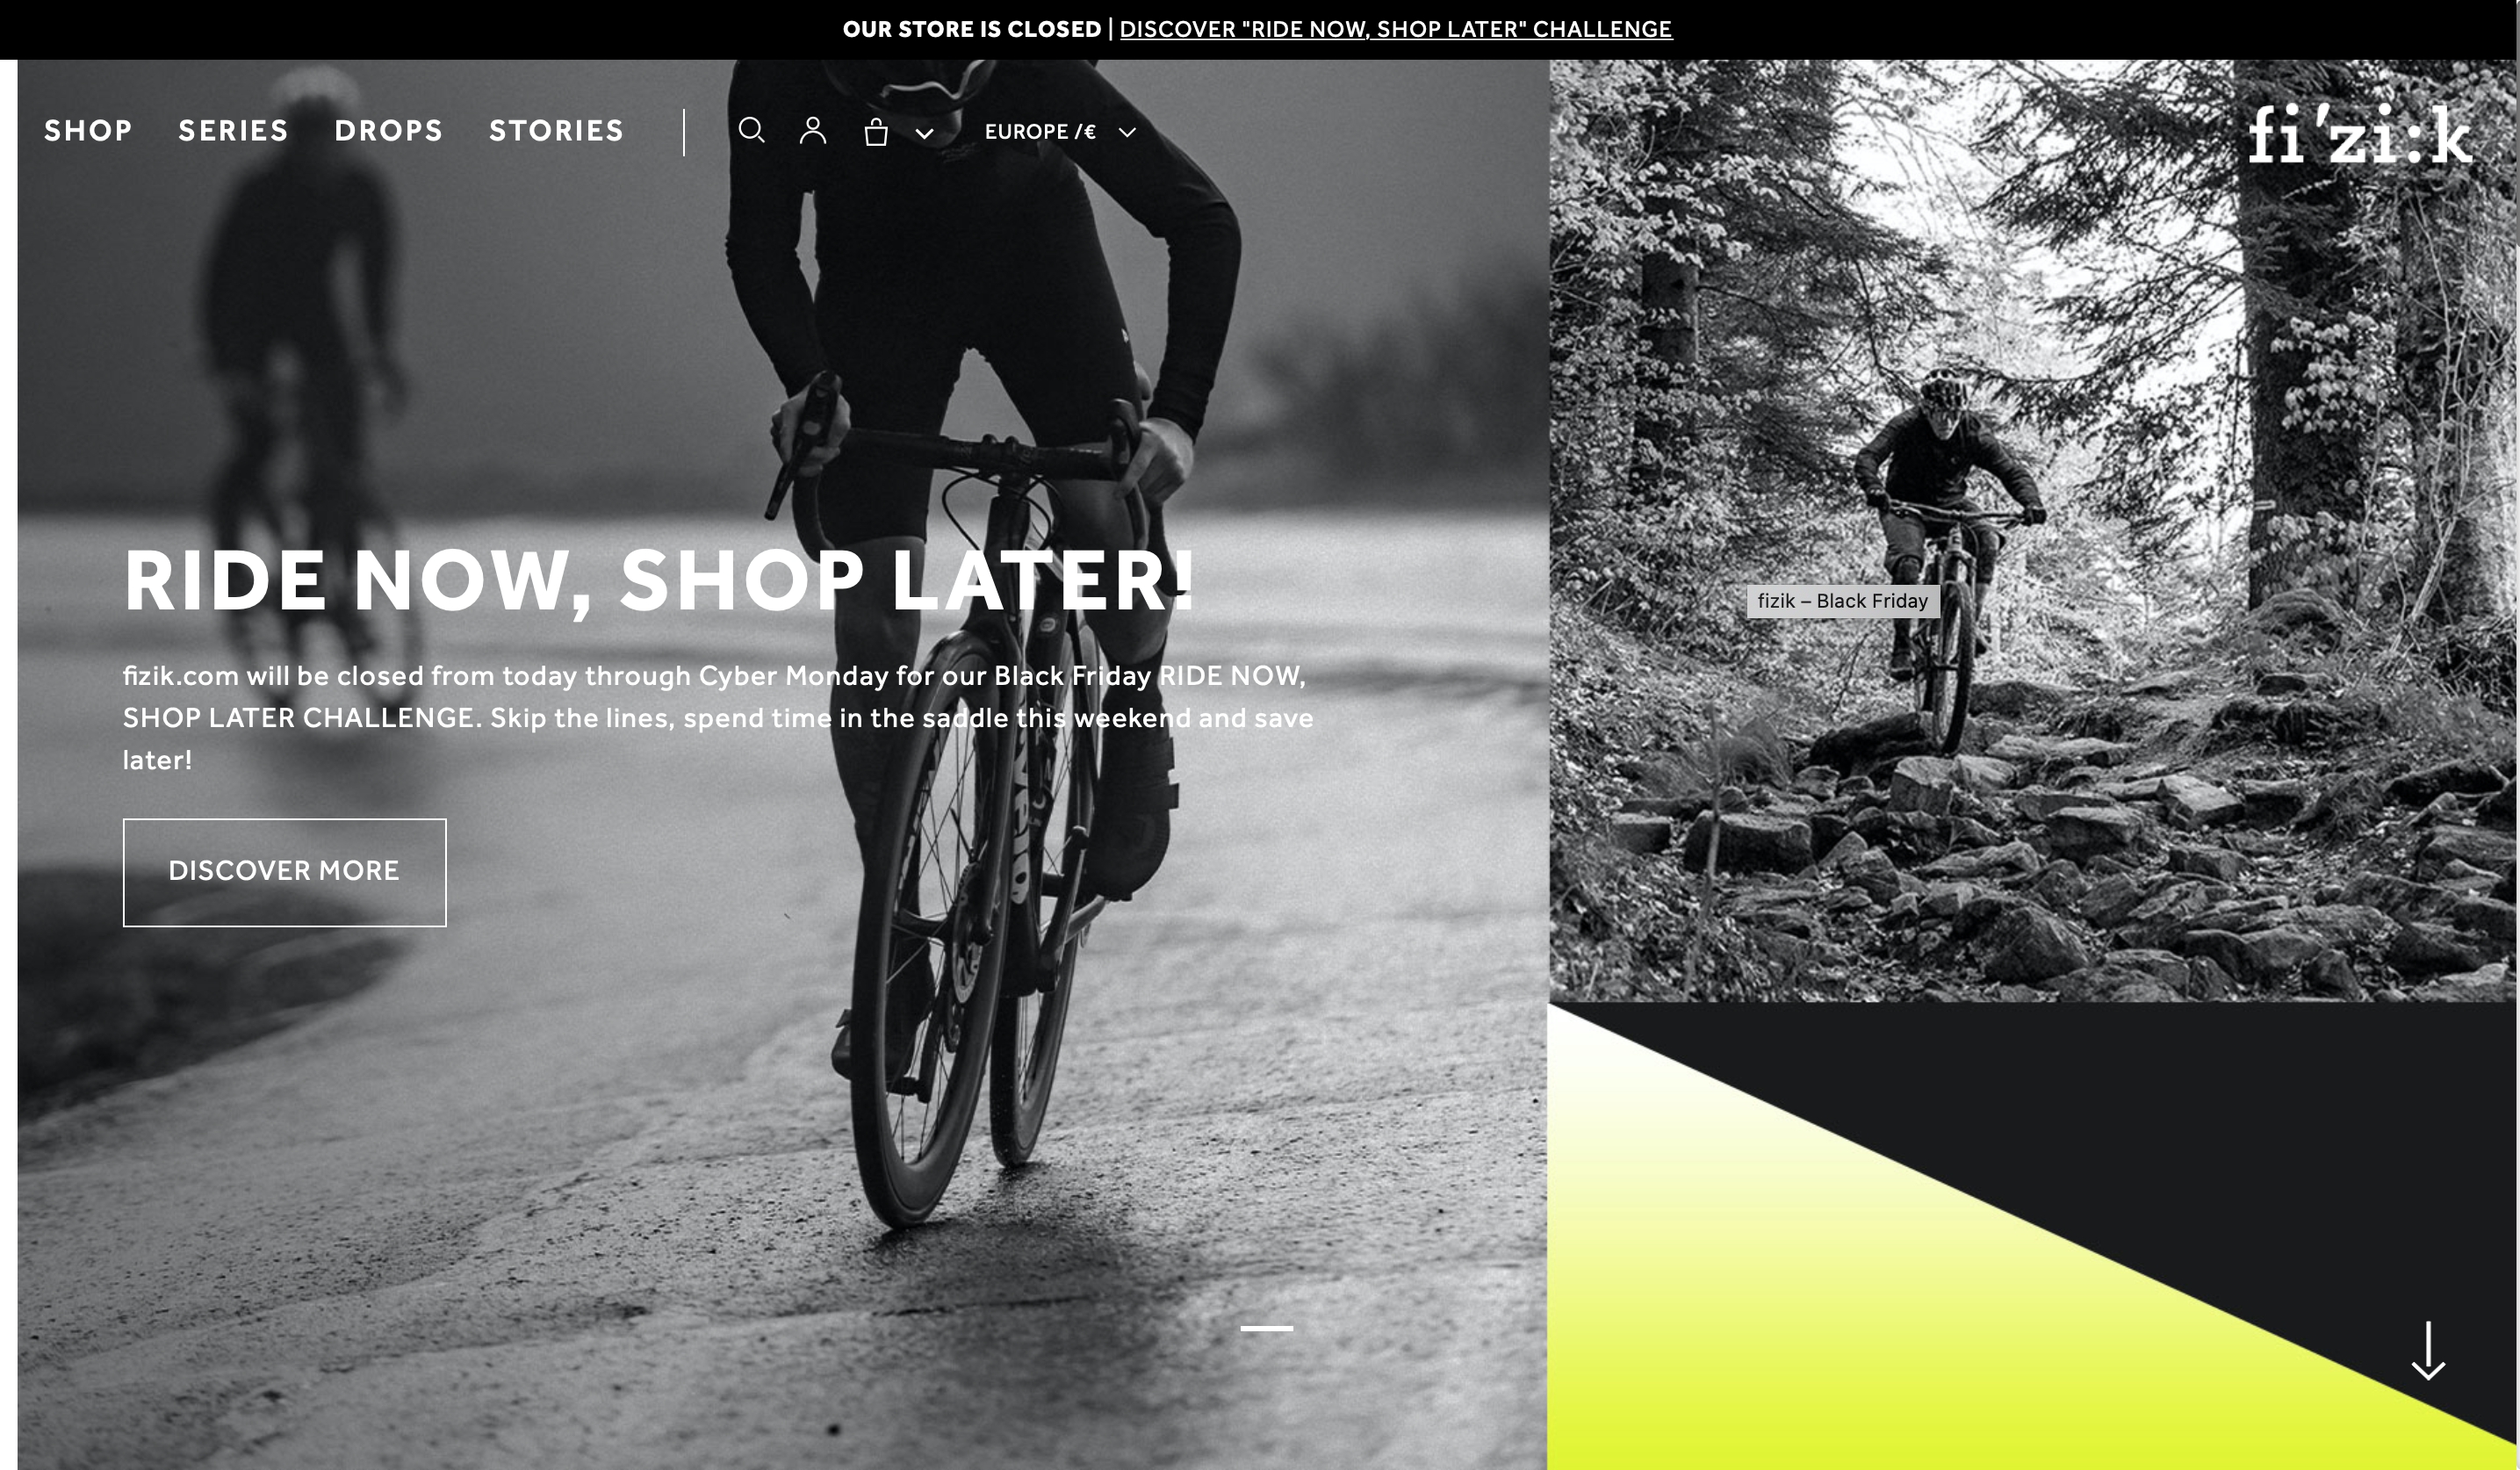 La componente visuale dell'homepage di Fizik prevista per la campagna Ride now, shop later